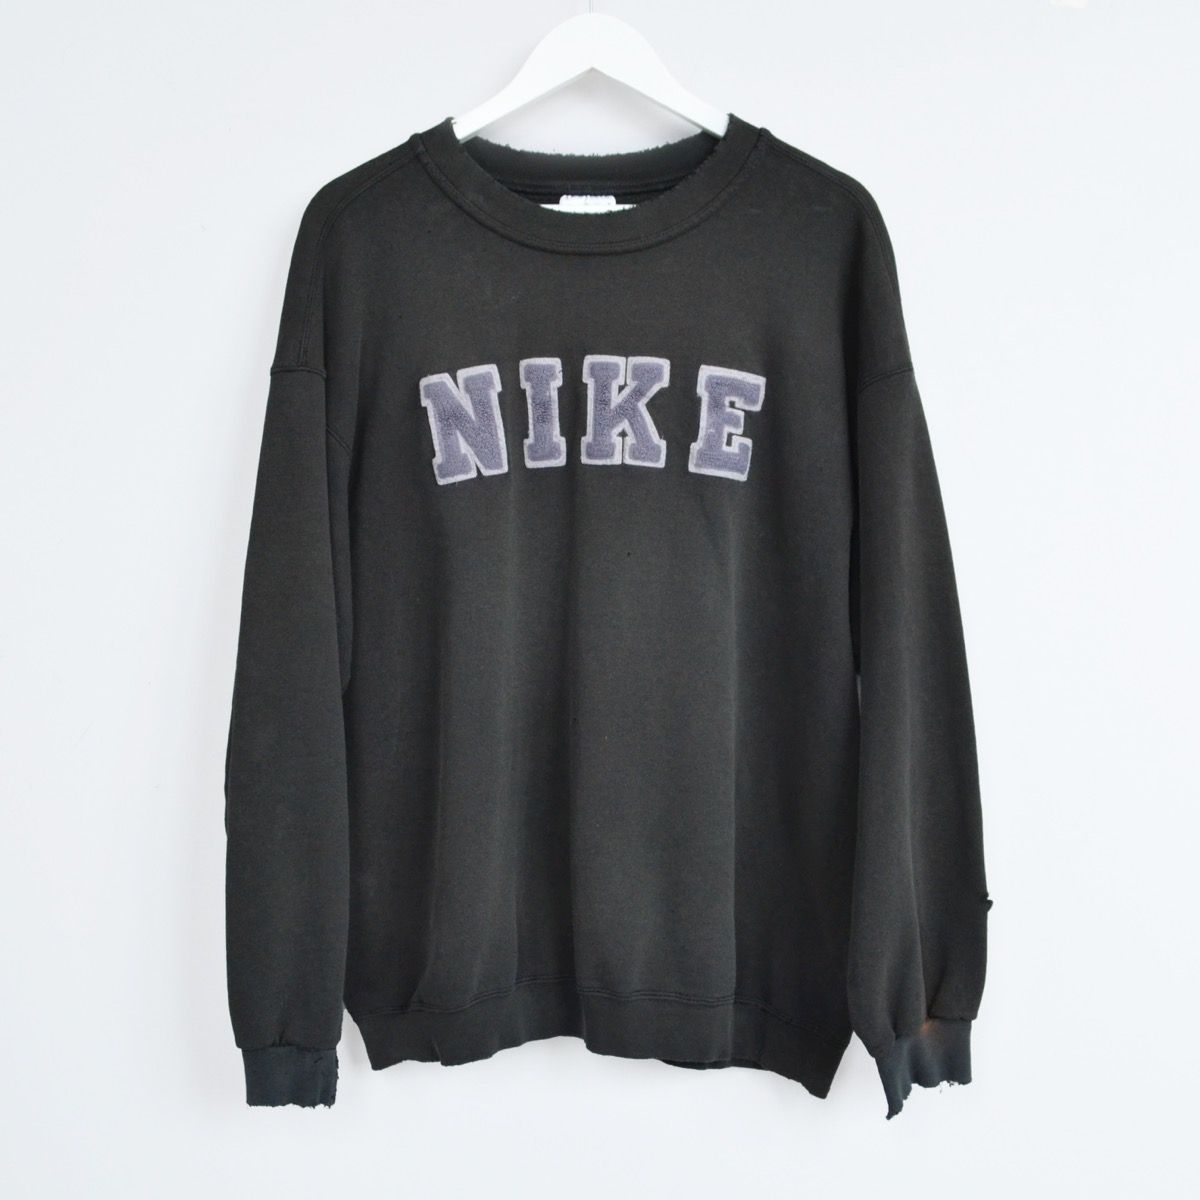 Vintage Nike Crewneck Sweatshirt